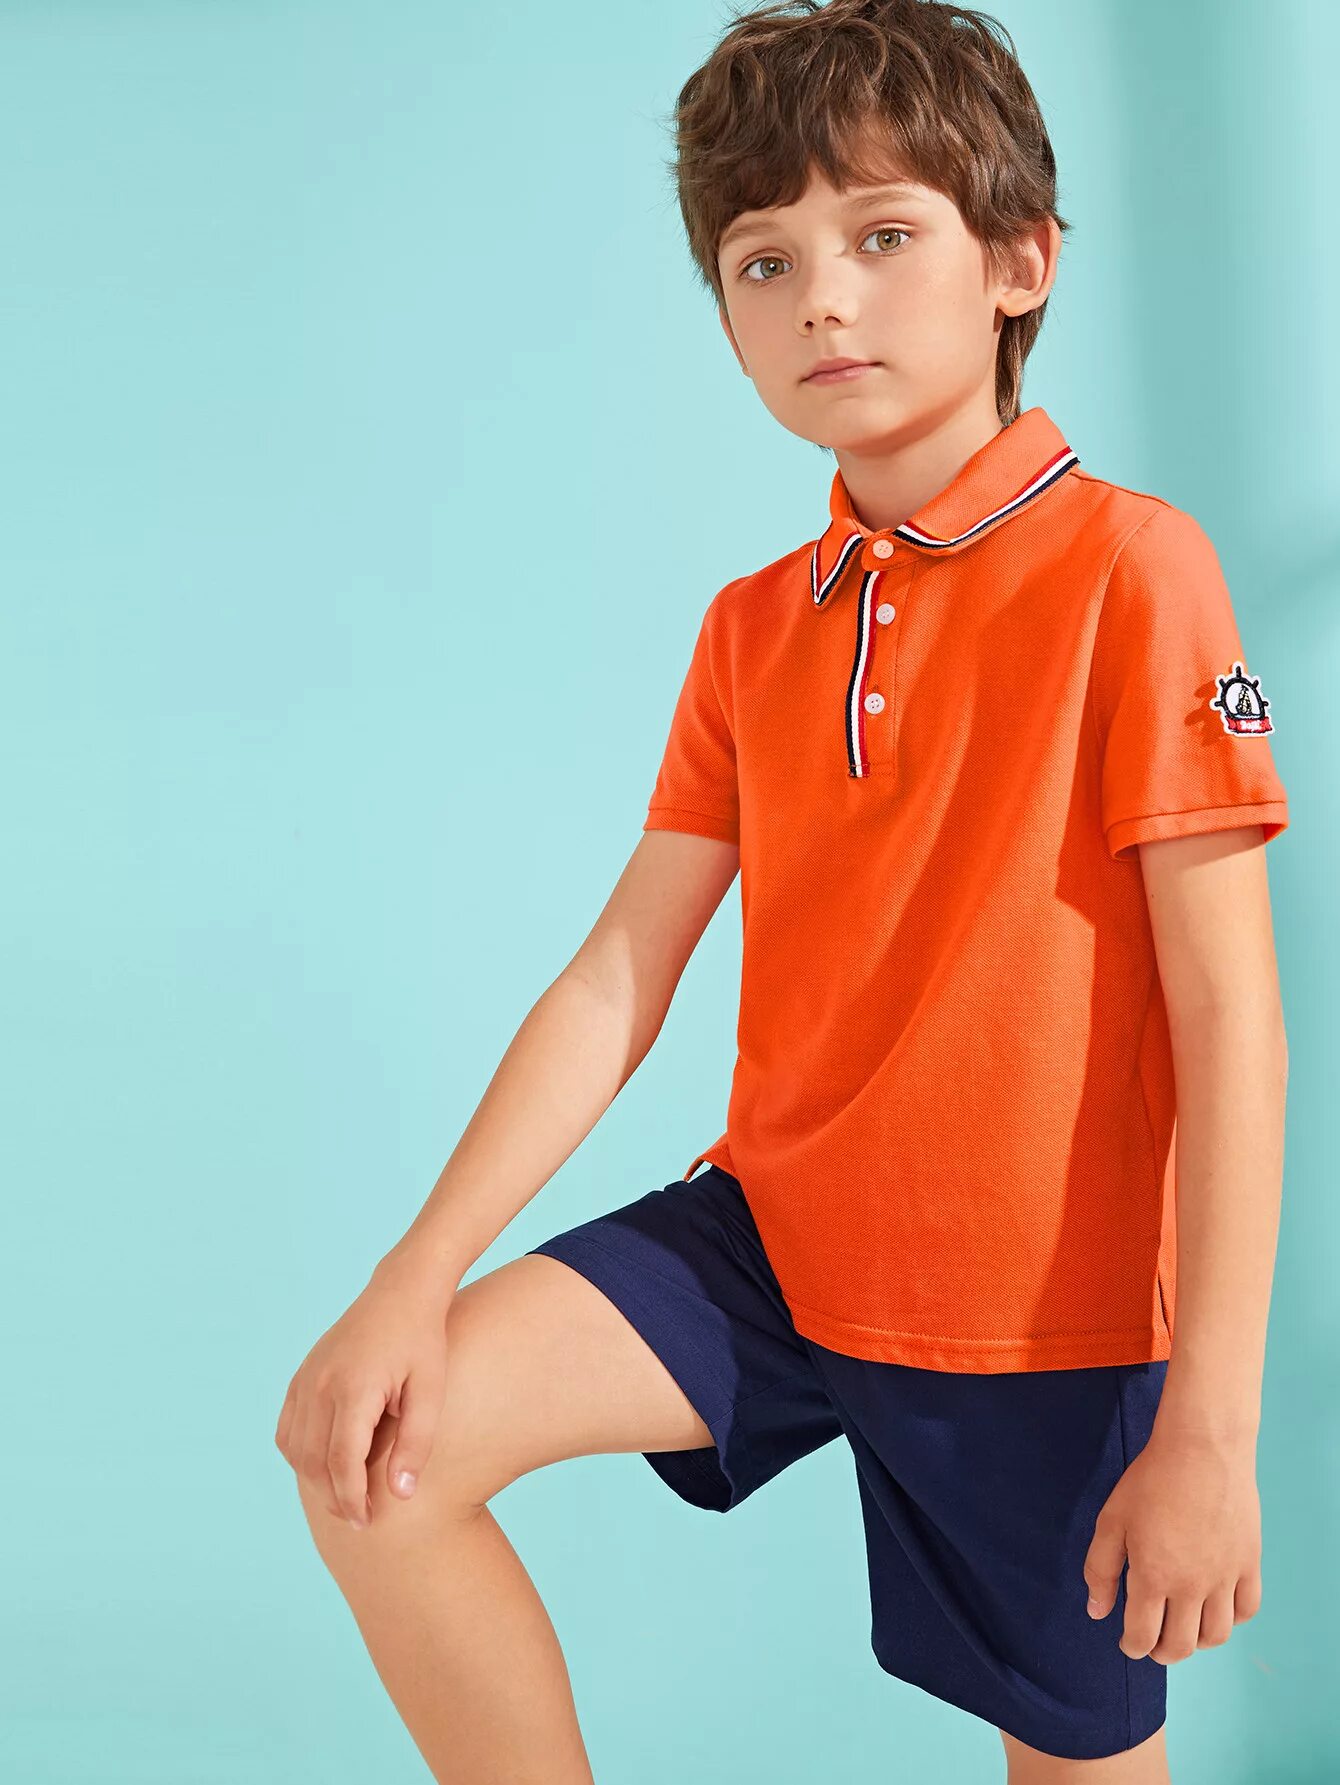 Boys polo. Шорты для мальчика оранжевые. Юноша в оранжевом. Оранжевая одежда для мальчиков. Мальчик 7 лет в оранжевых.